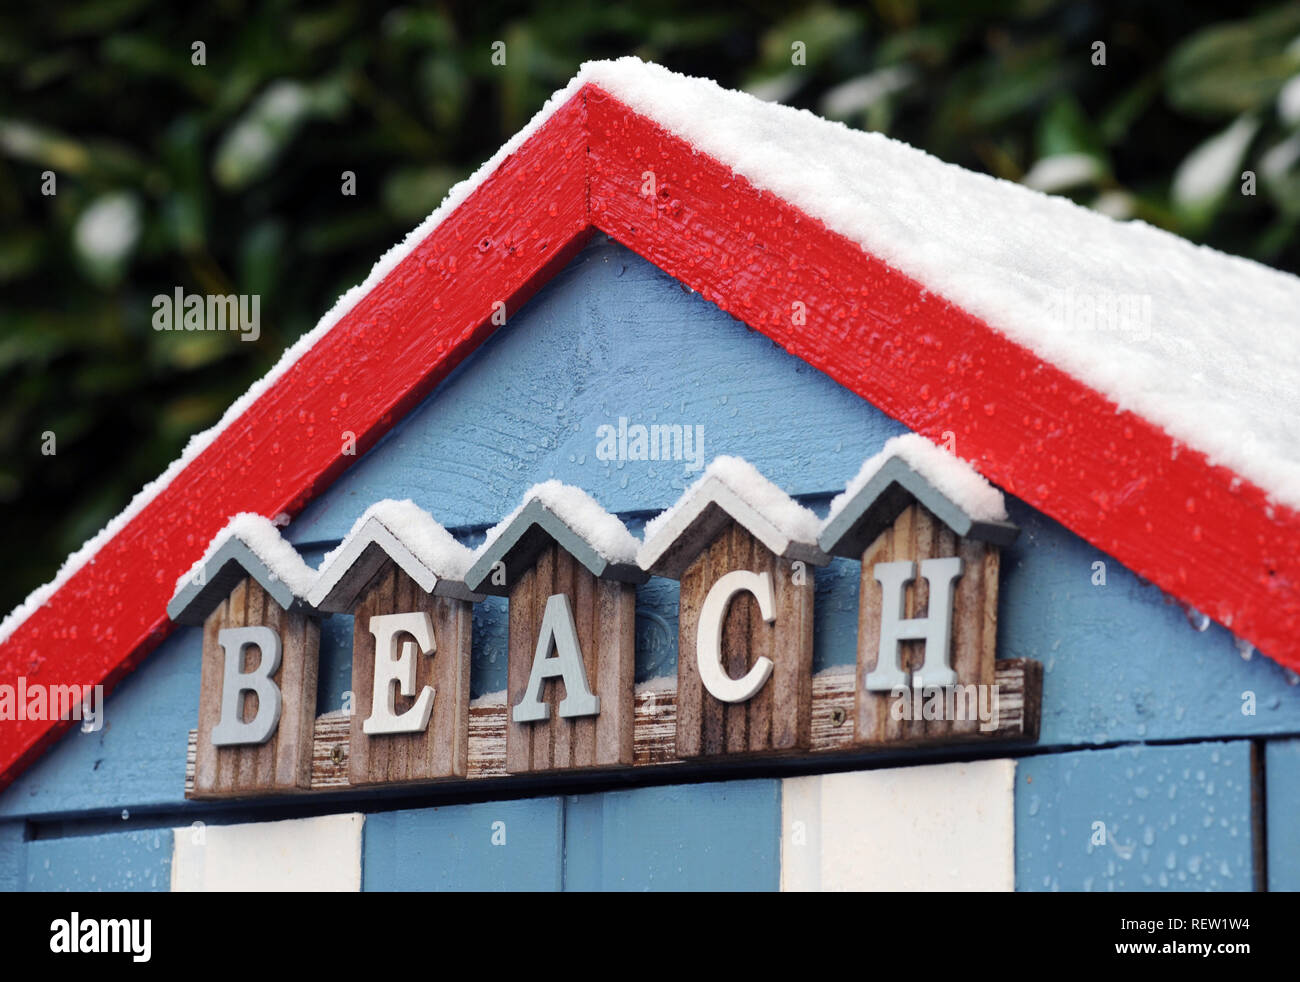 Cabane de plage avec 'Beach' SIGN IN NEIGE HIVER FROID RESORT TOURISME ETC UK Banque D'Images